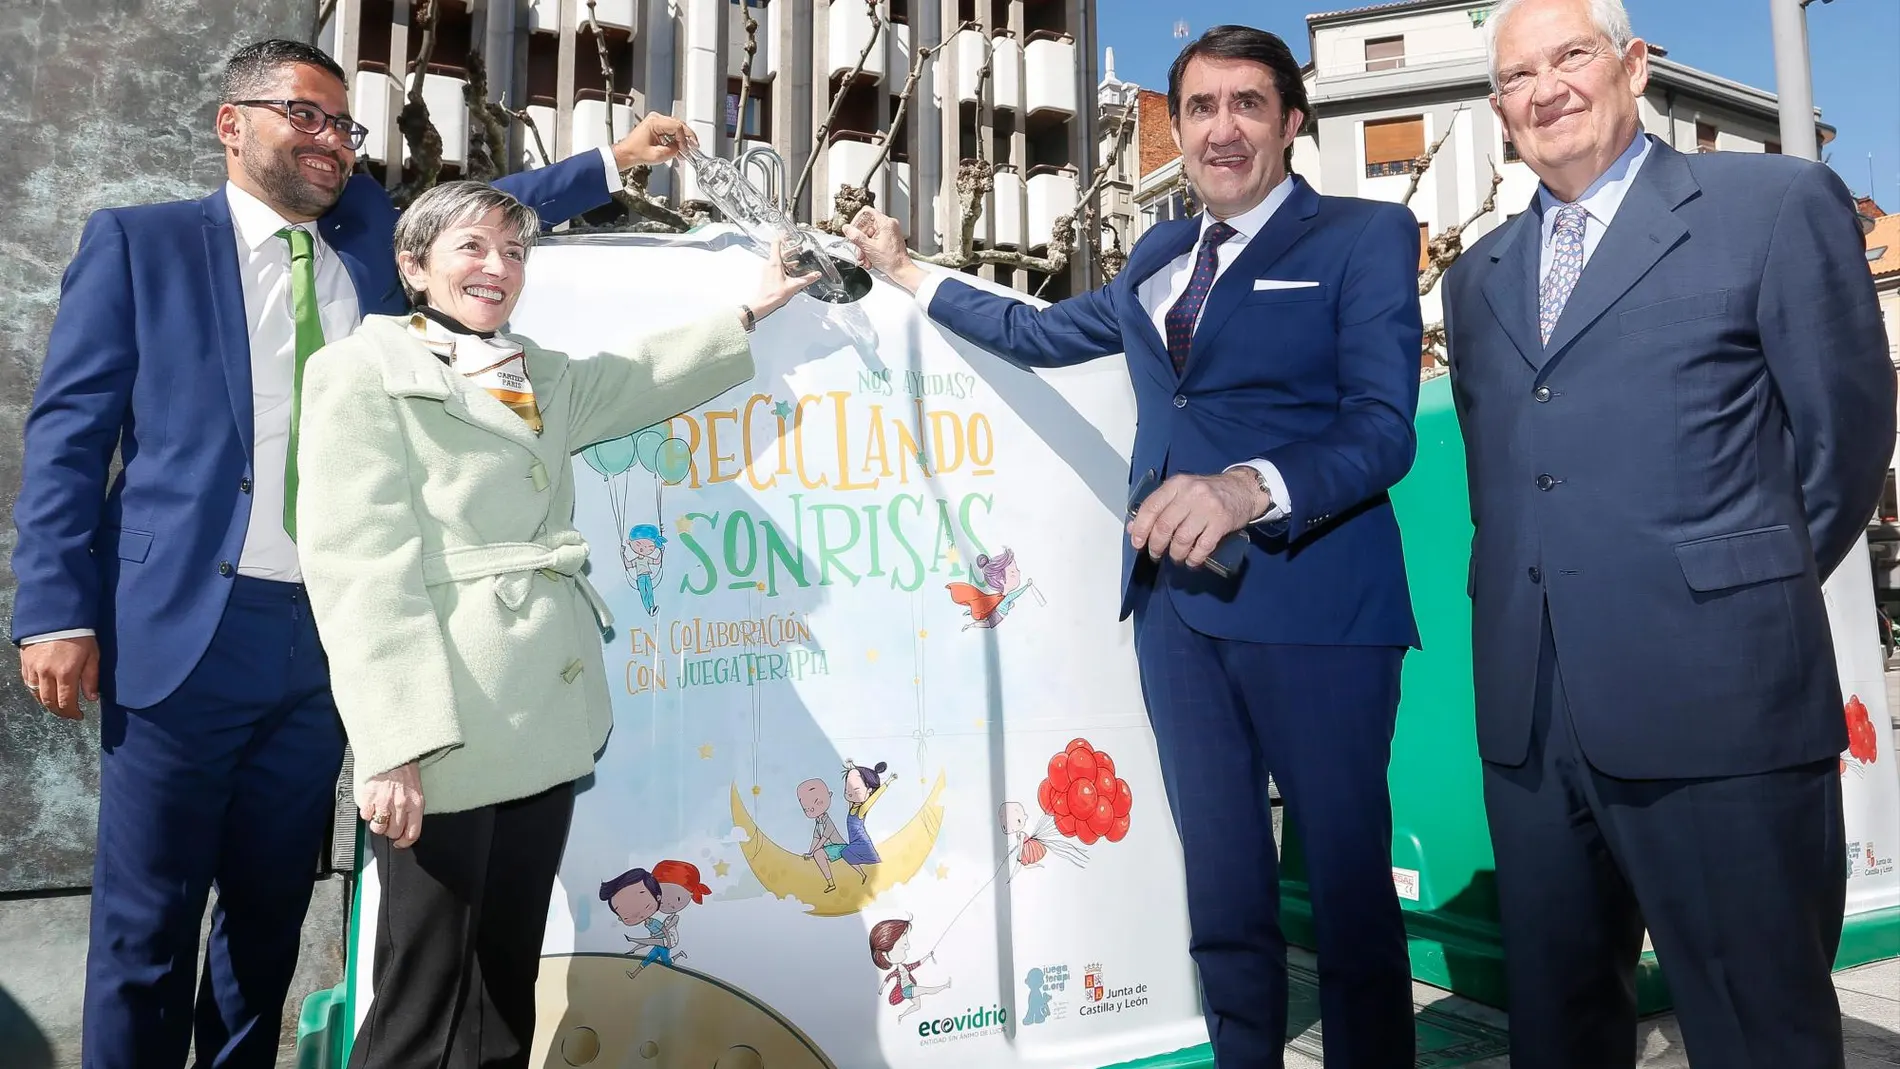 El consejero Juan Carlos Suárez-Quiñones, presenta la iniciativa «Reciclando Sonrisas» junto a José Carlos Agustina, Ana Franco y Guillermo García